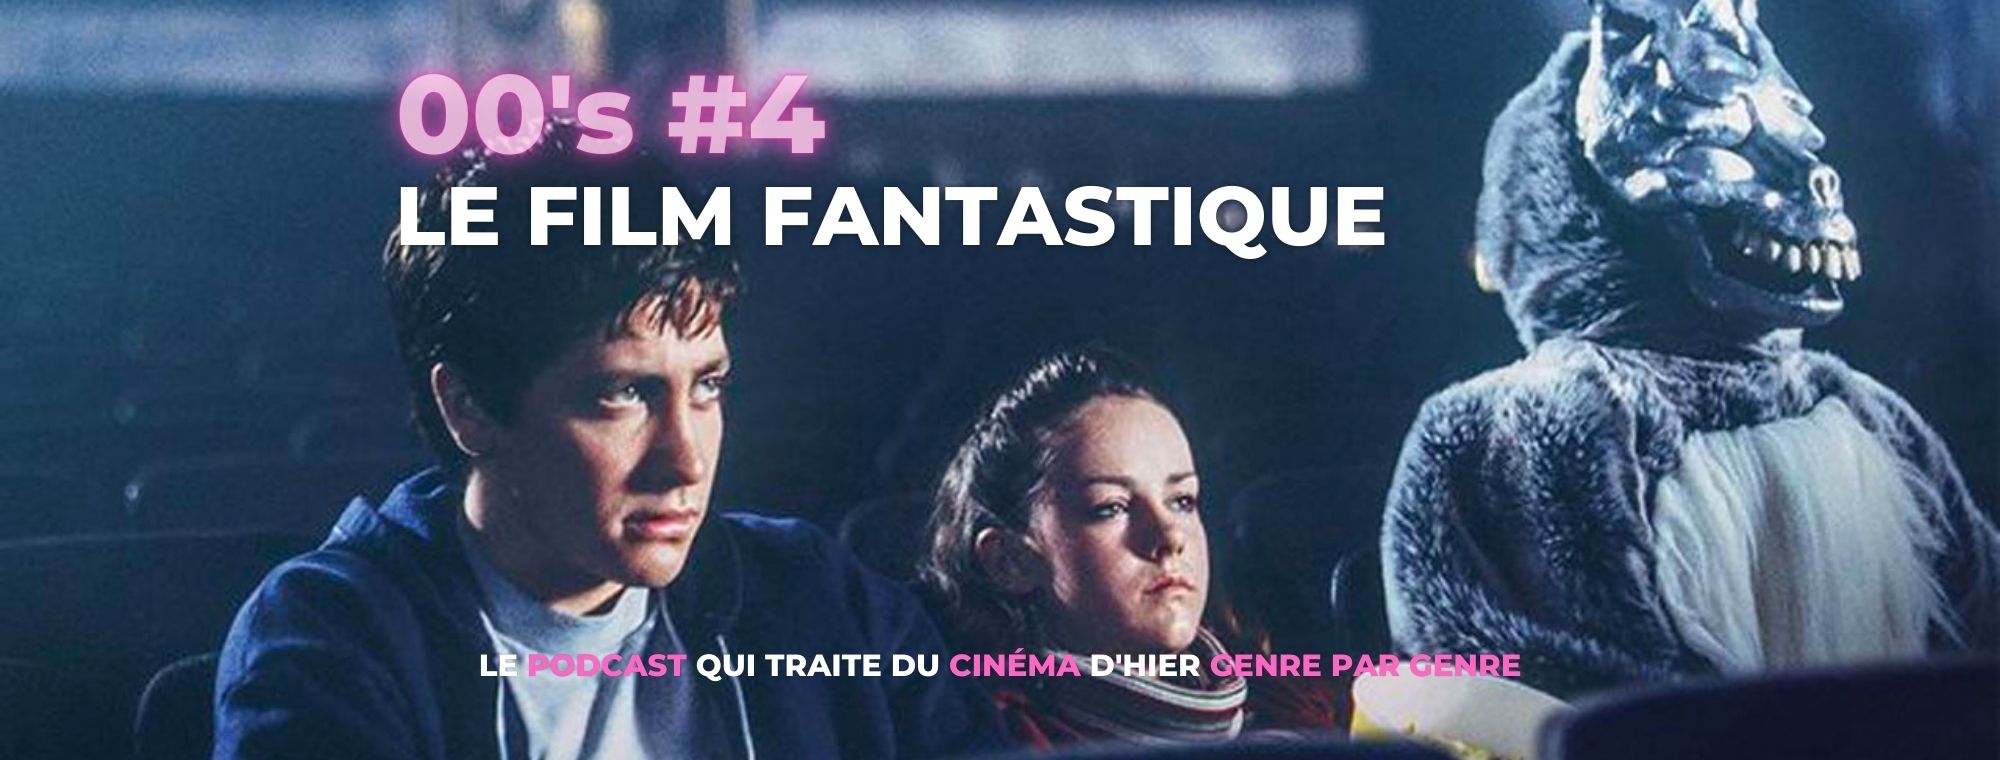 Parlons Péloches - 00’s #4 Le film fantastique